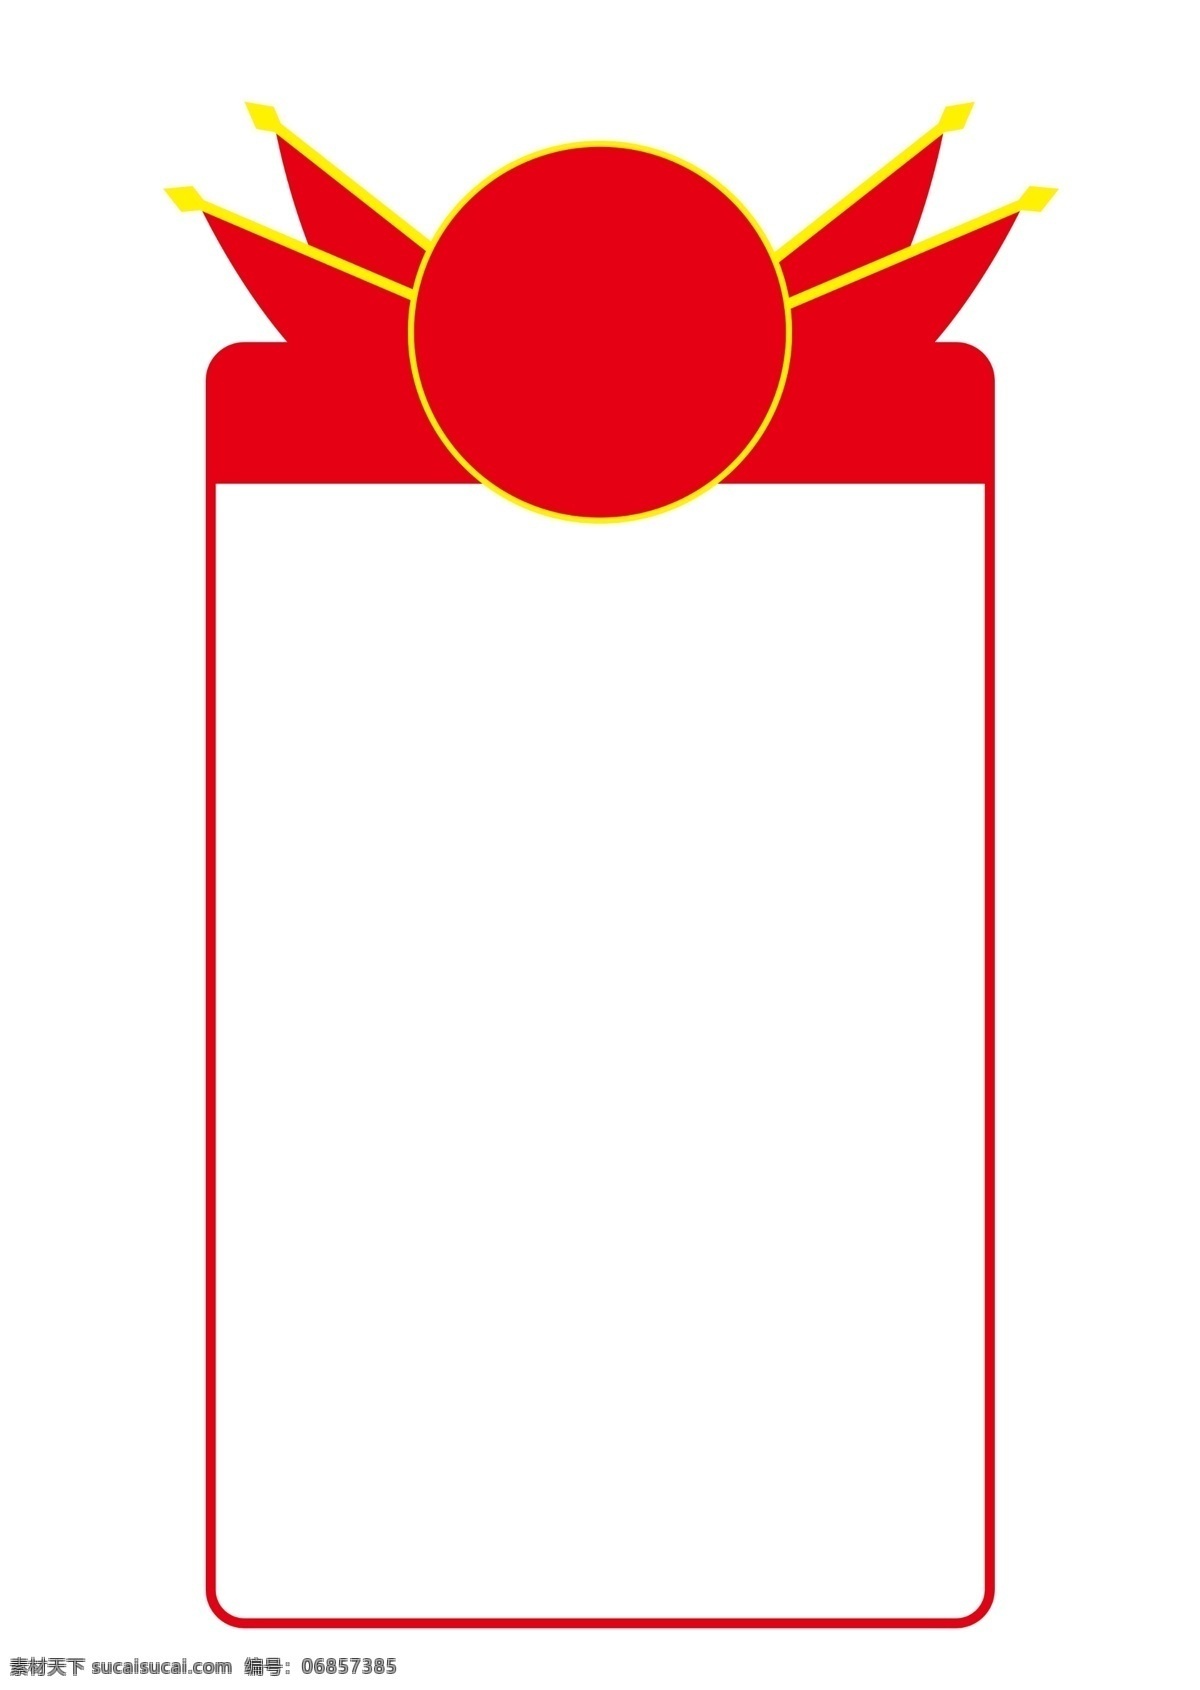 红旗 标题 红色文本框 军用 扶贫 题目 边框 红色边框 矢量图形 图 分层